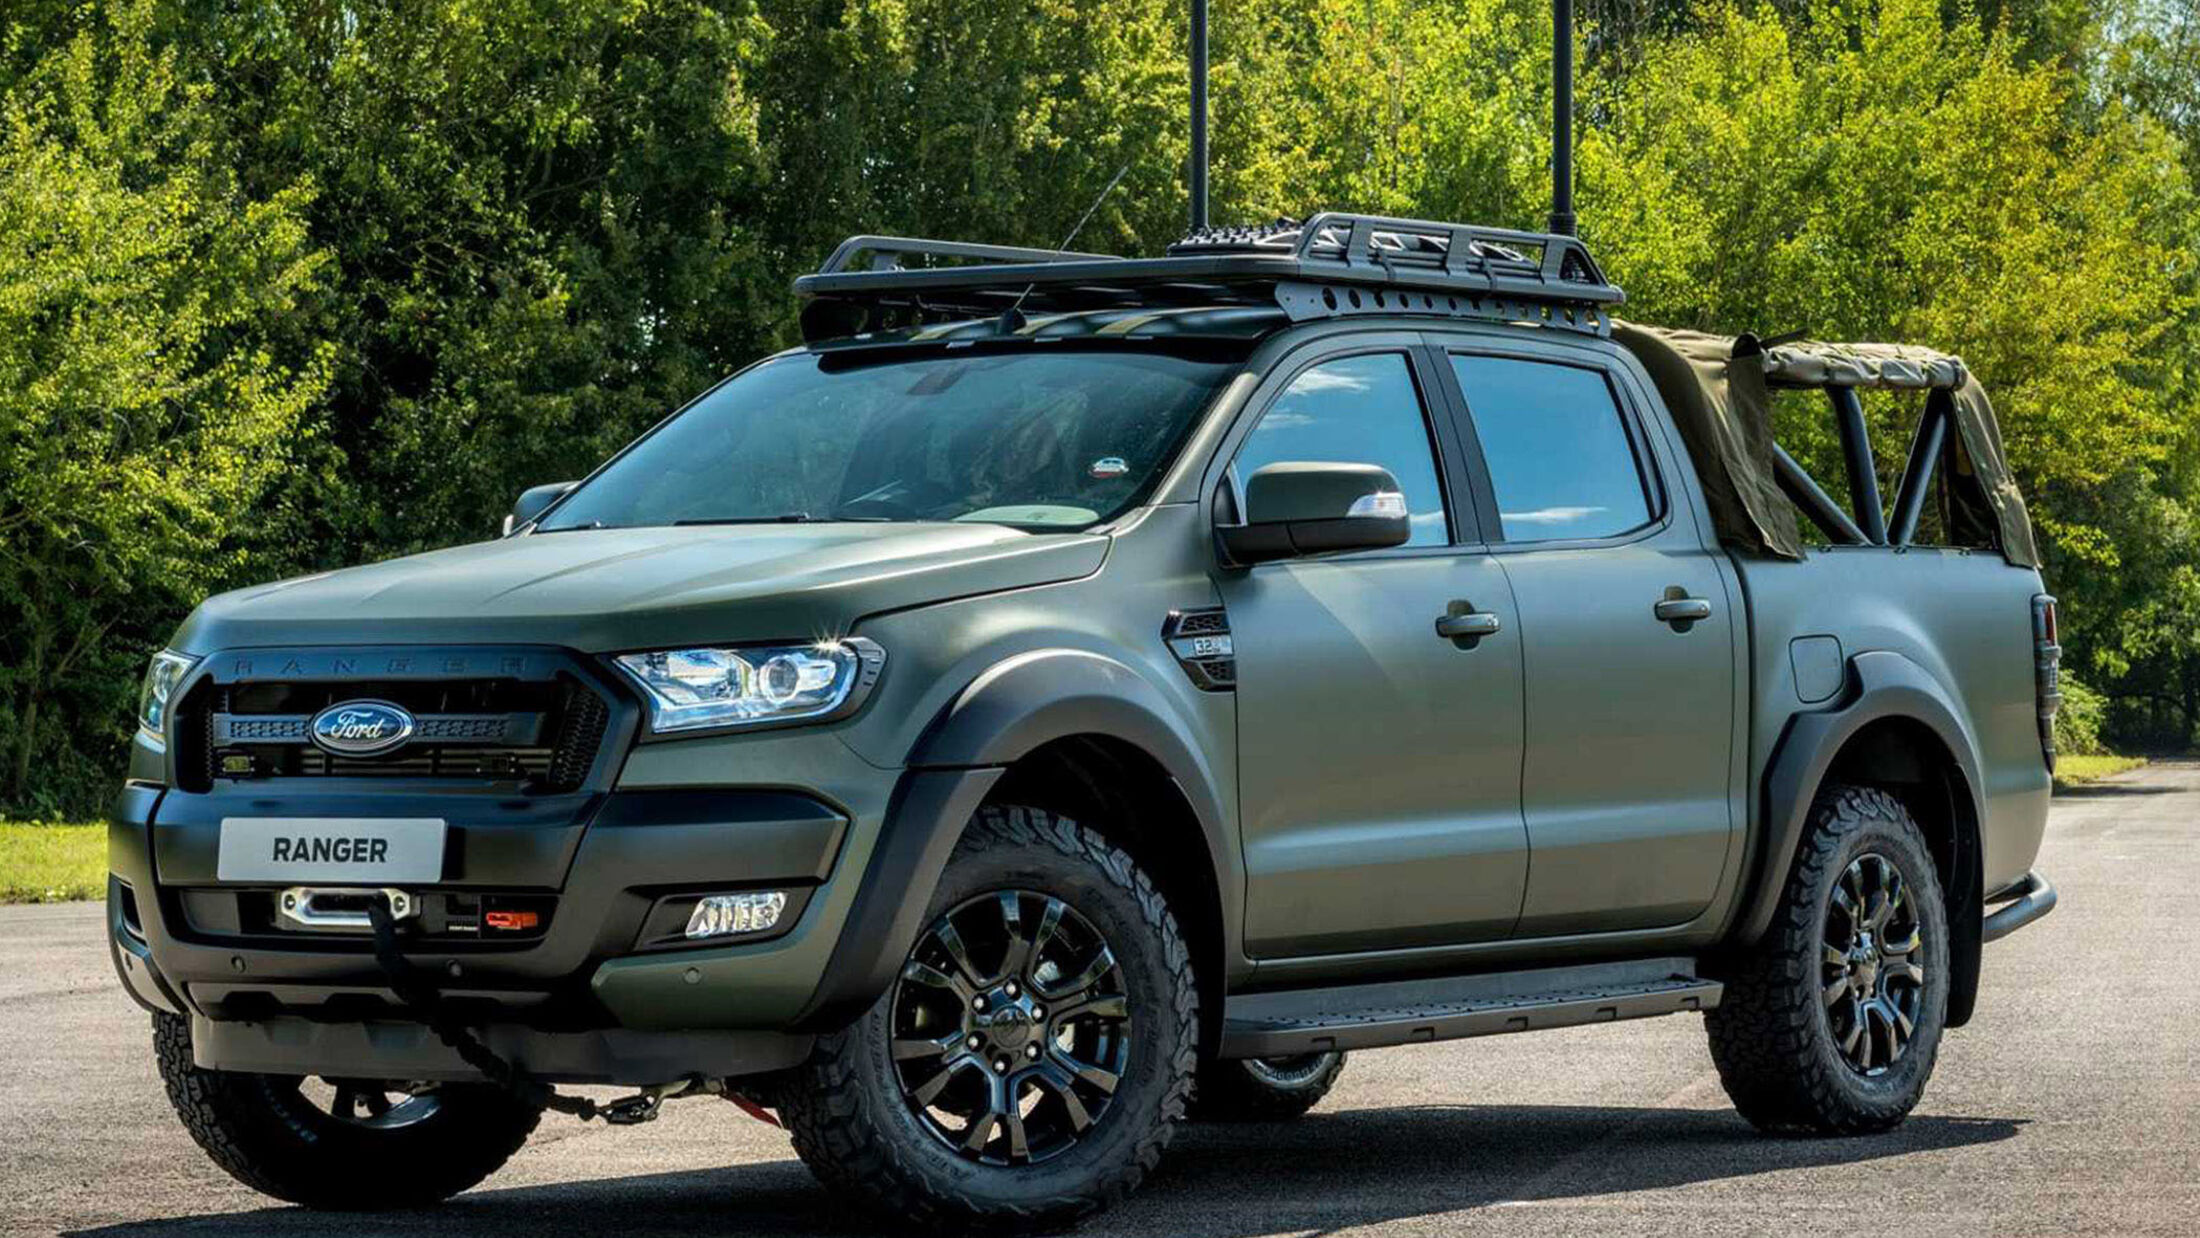 https://imgr1.auto-motor-und-sport.de/Ricardo-Ford-Ranger-Demonstrator-Military-Pickup-jsonLd16x9-1ae8e25d-1638064.jpg